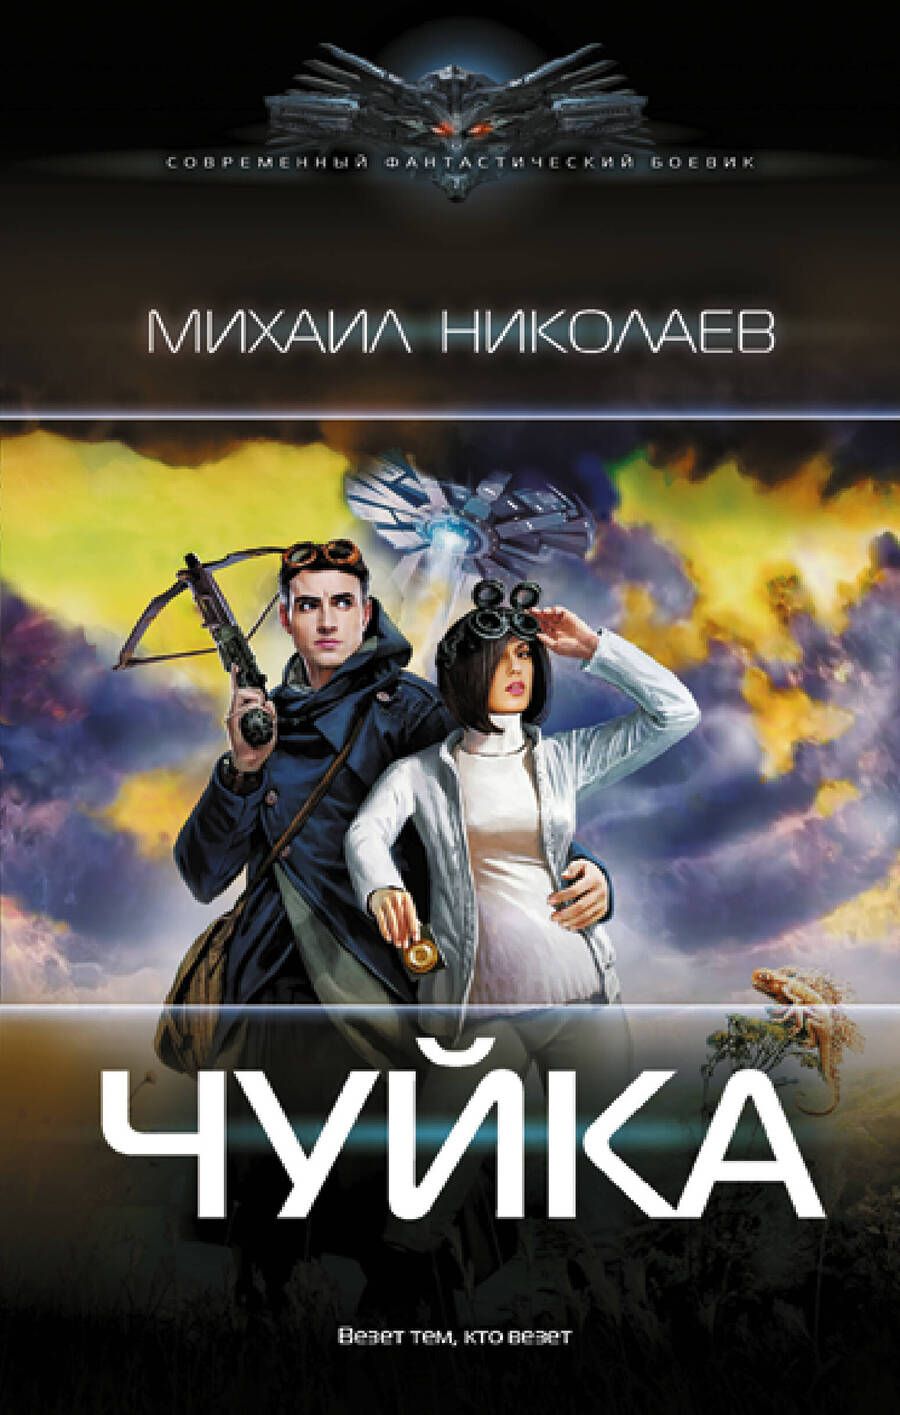 Обложка книги "Николаев: Чуйка"